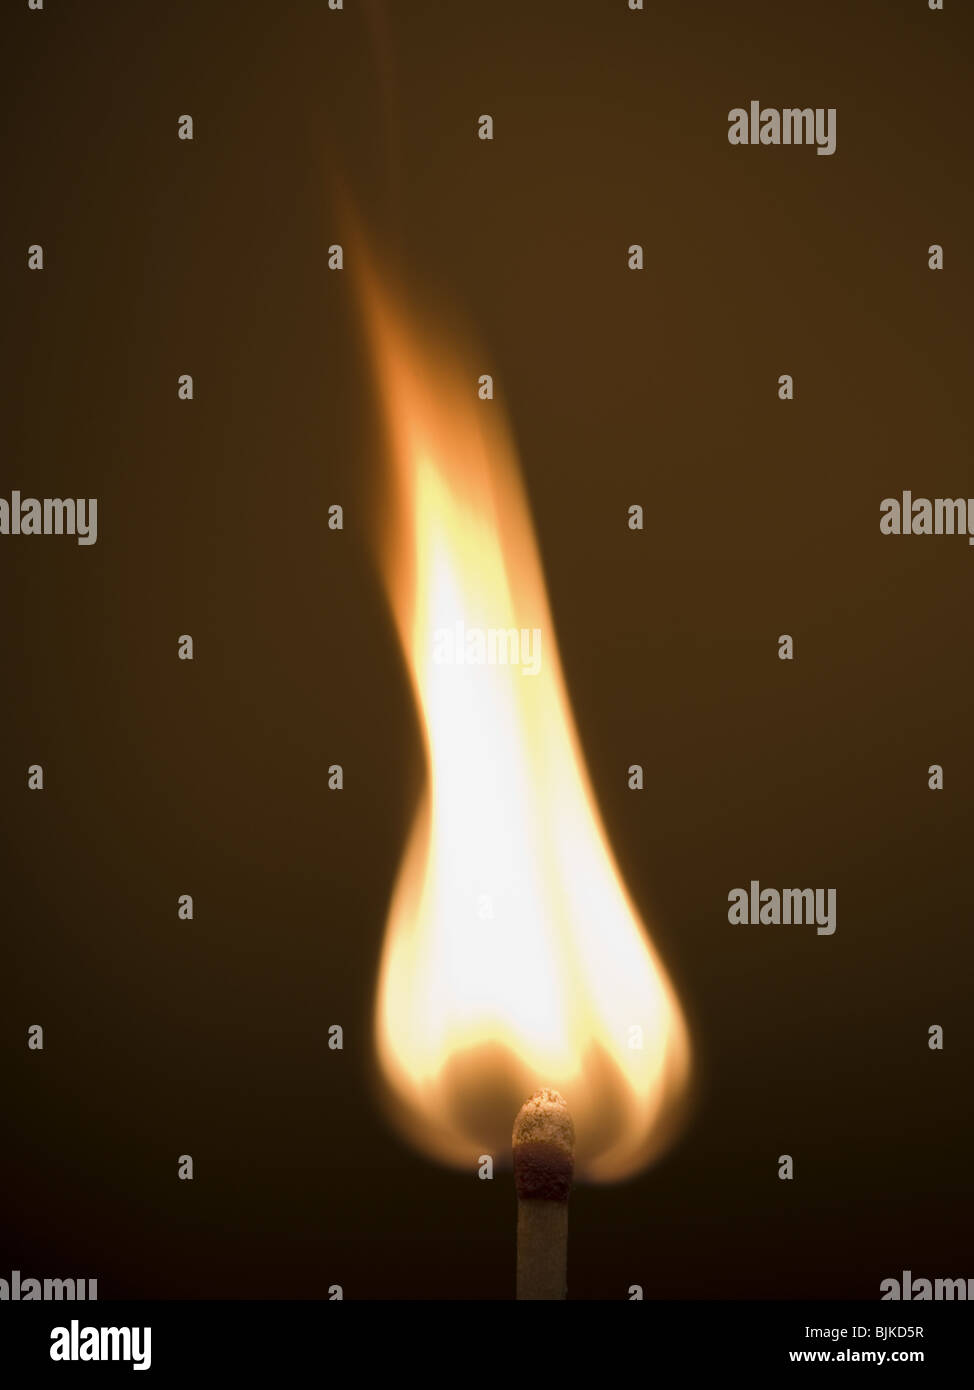 Closeup of burning match Stock Photo